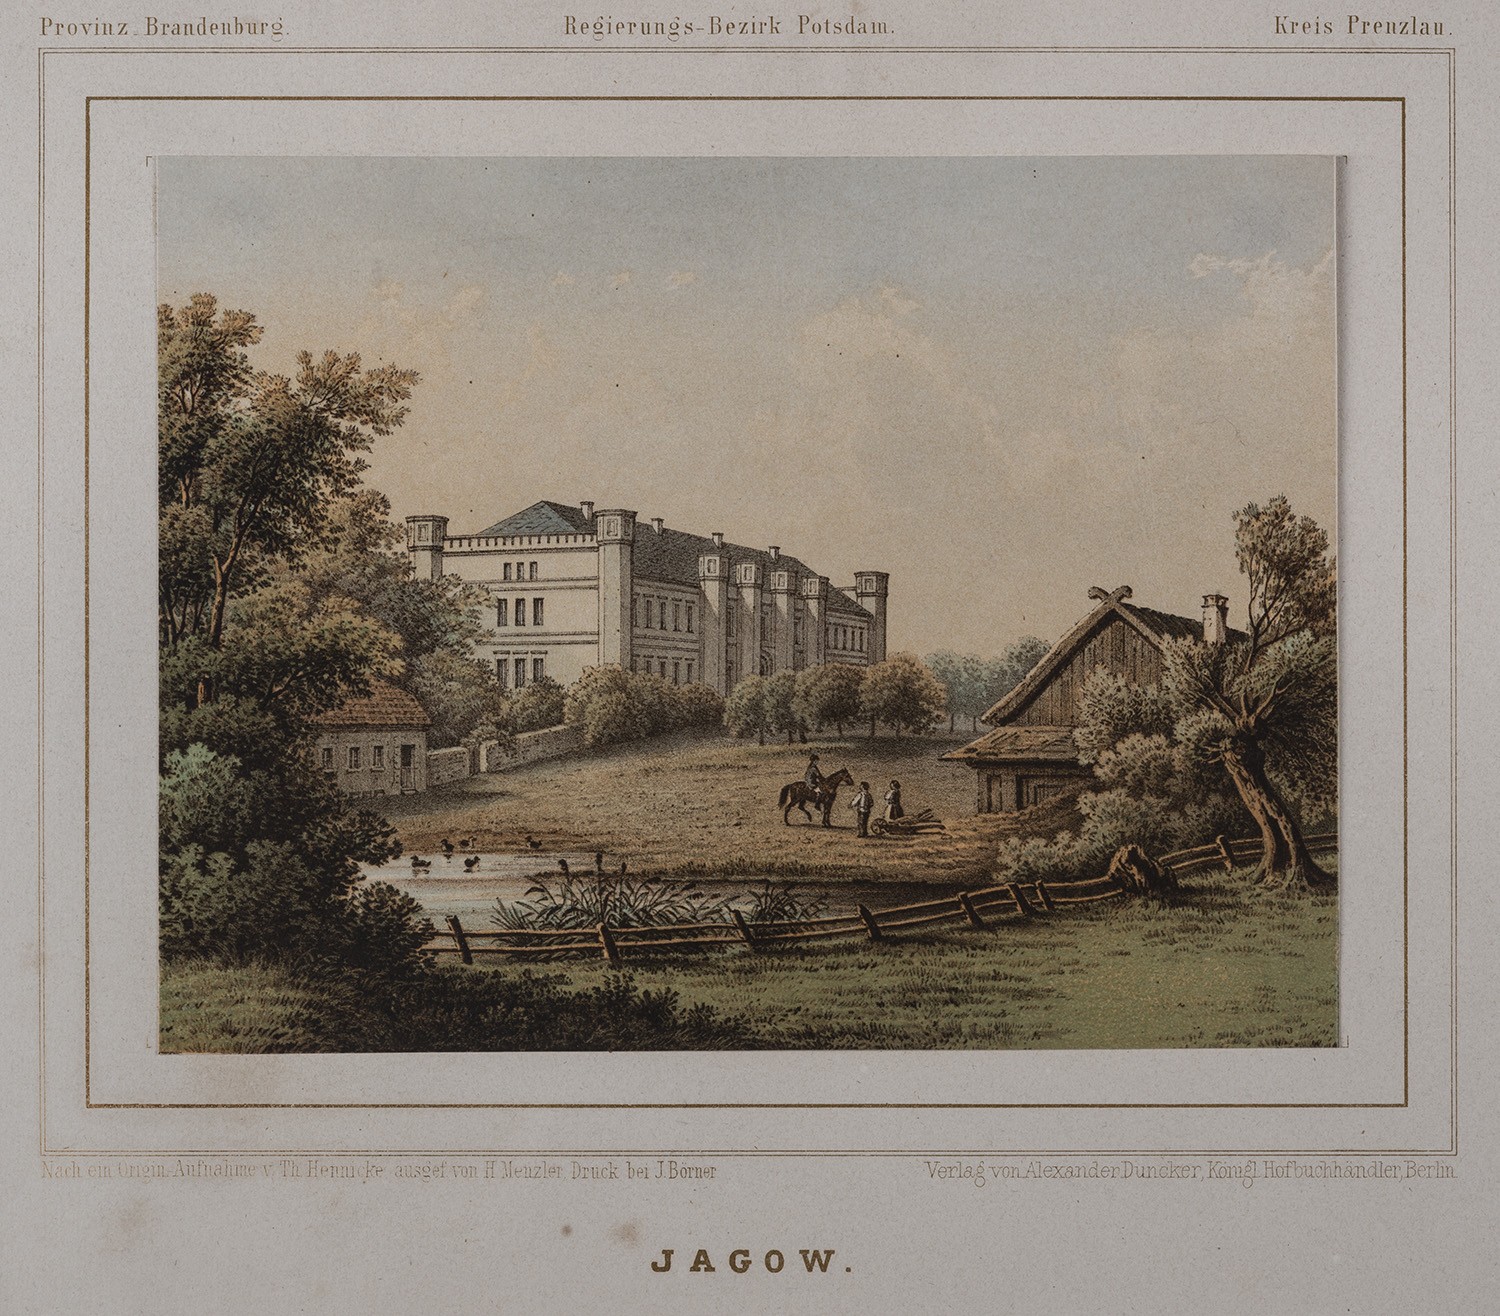 Jagow (Kr. Prenzlau): Herrenhaus von Südwesten (Landesgeschichtliche Vereinigung für die Mark Brandenburg e.V., Archiv CC BY)